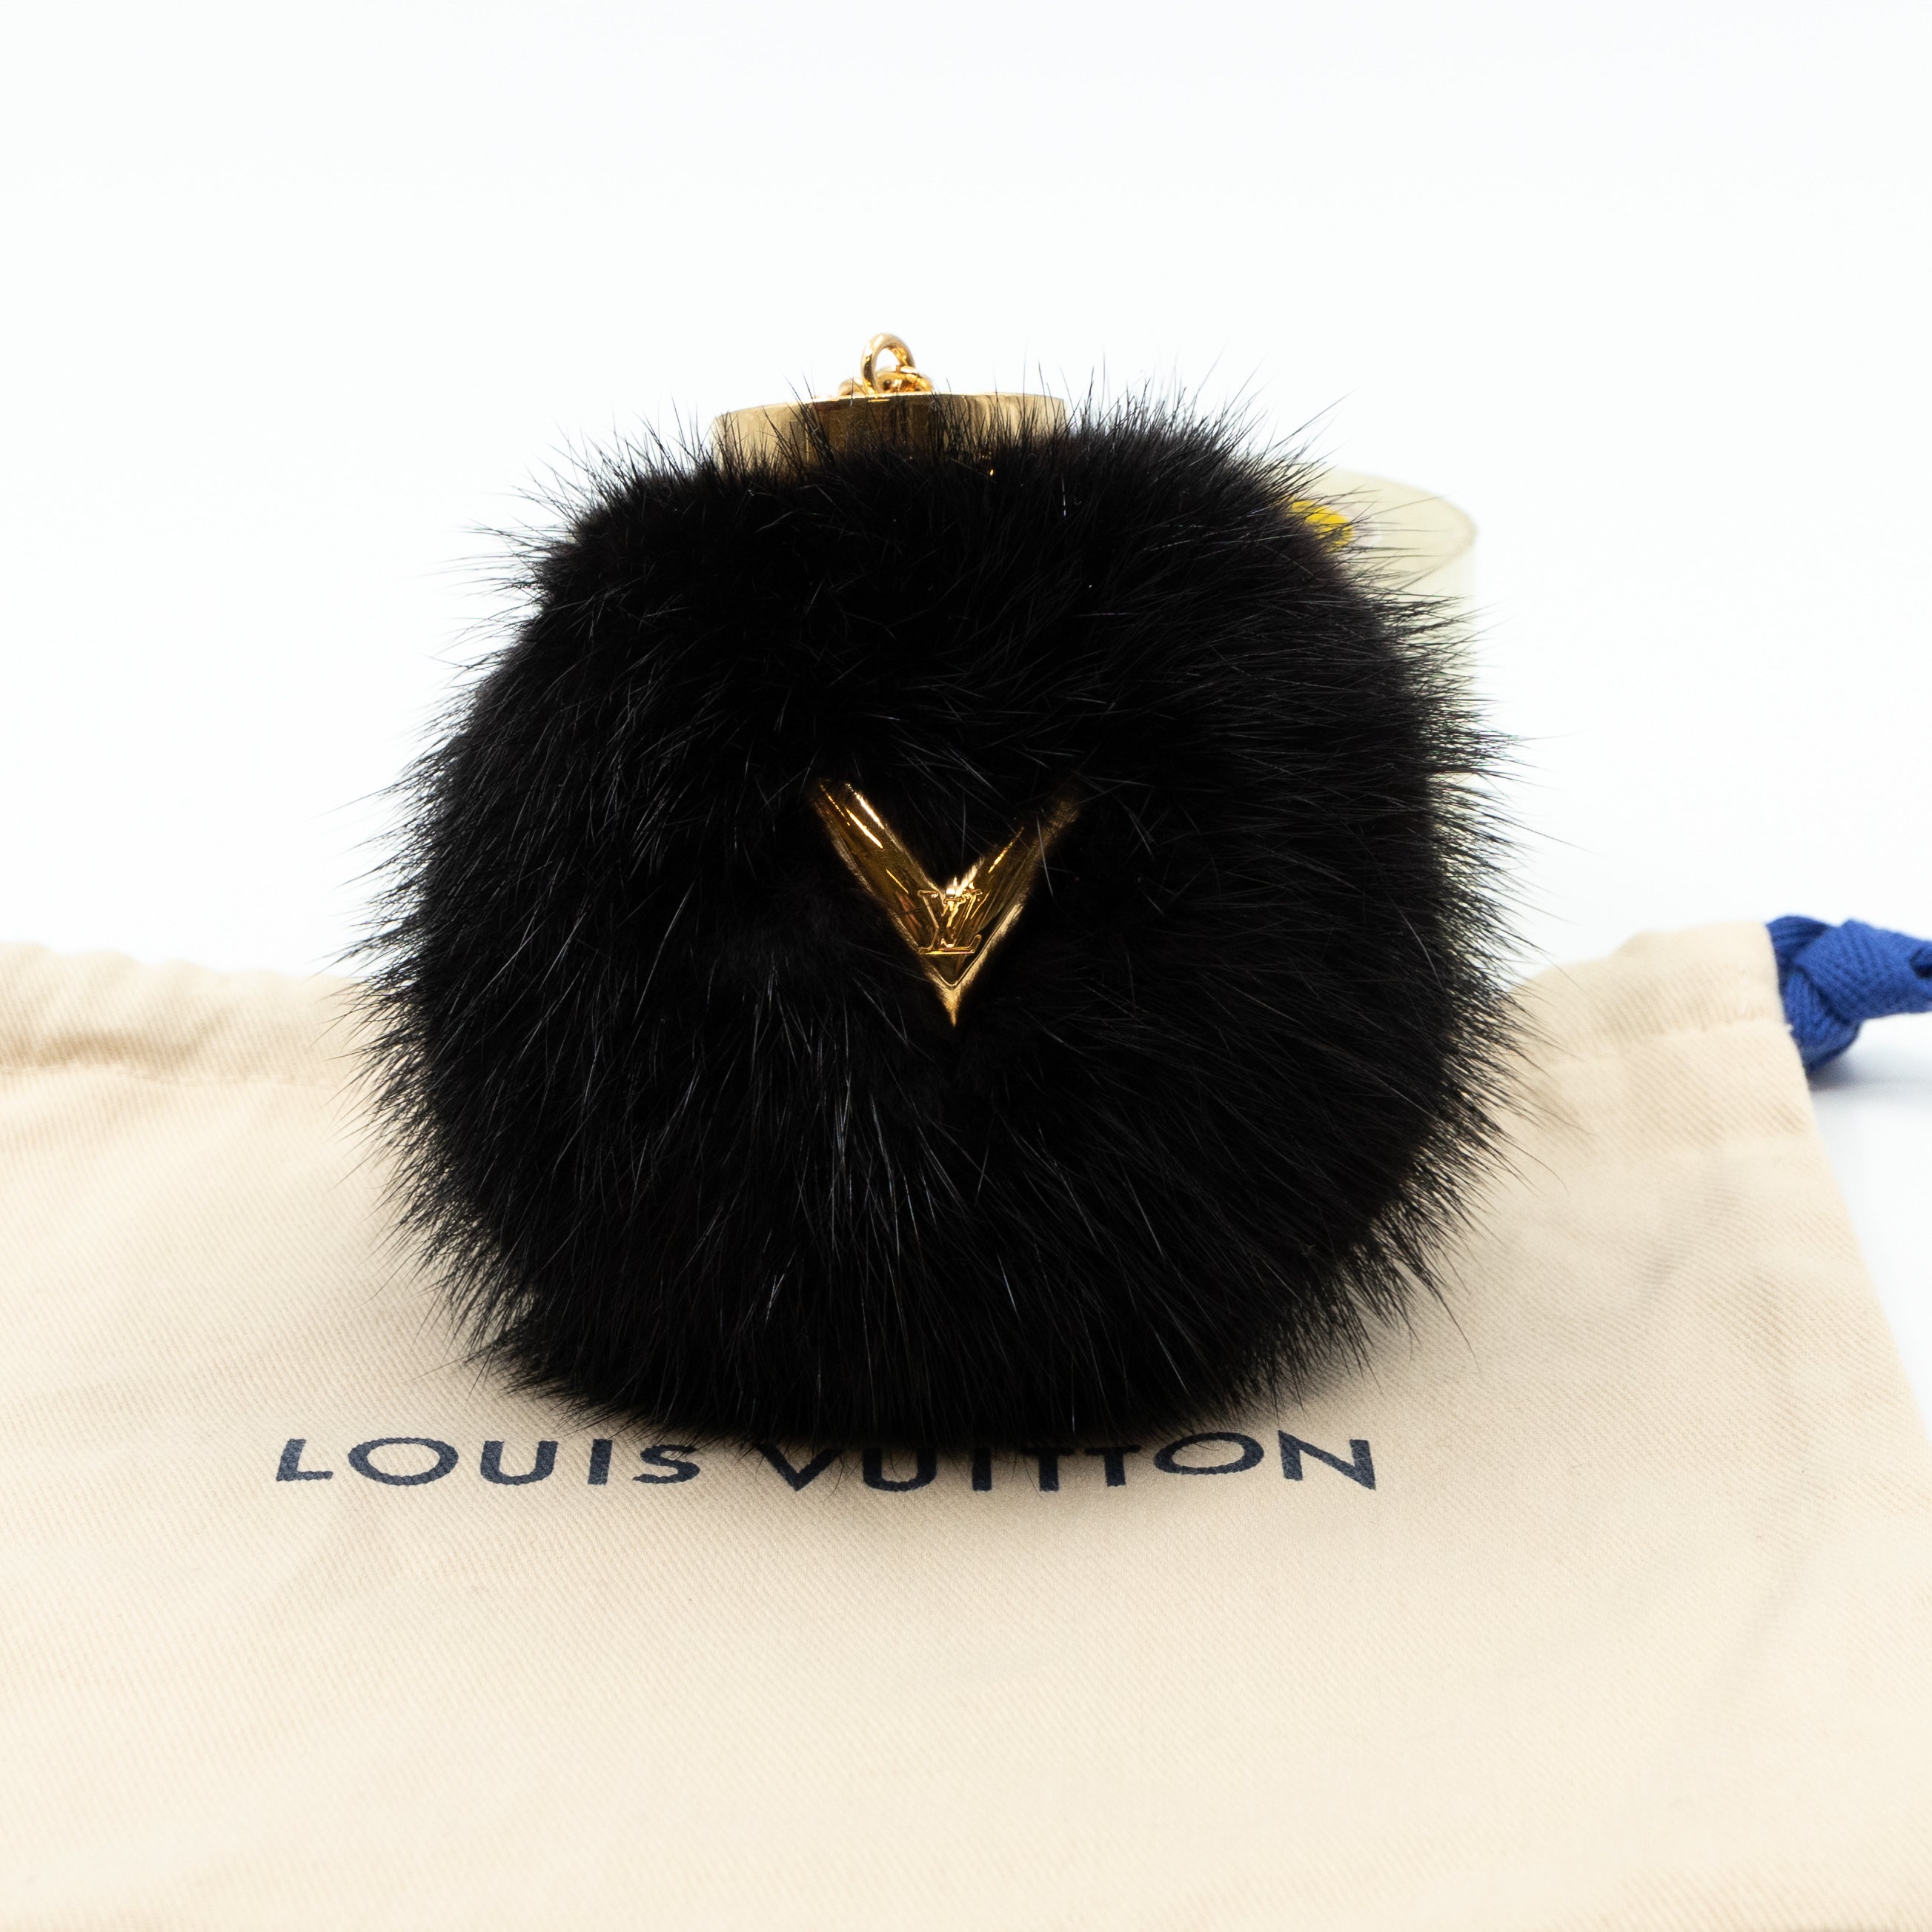 Louis Vuitton Fox Fur Fuzzy Bubble Bag Charm - Black Keychains, Accessories  - LOU151250